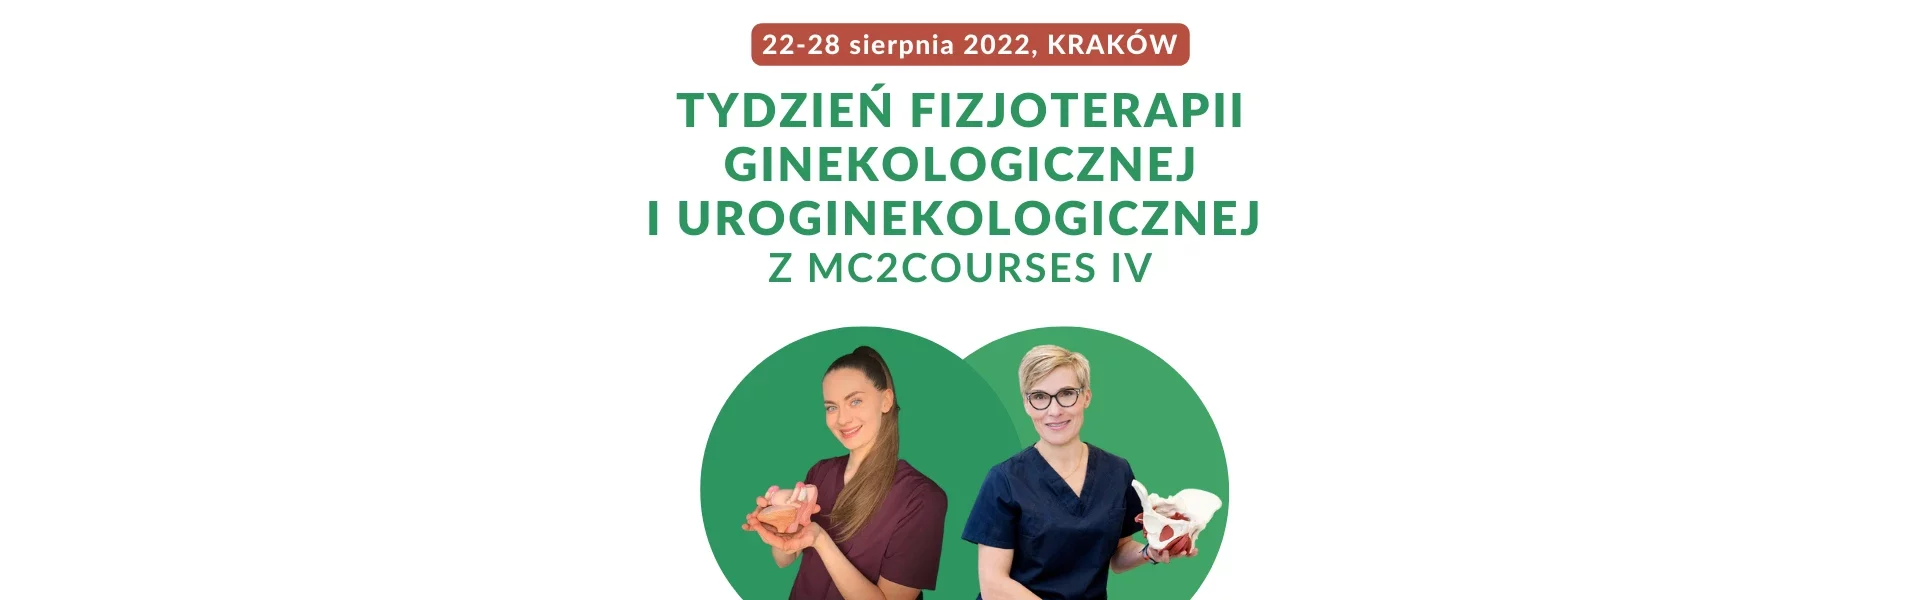 Tydzień fizjoterapii ginekologicznej i uroginekologicznej Krakow